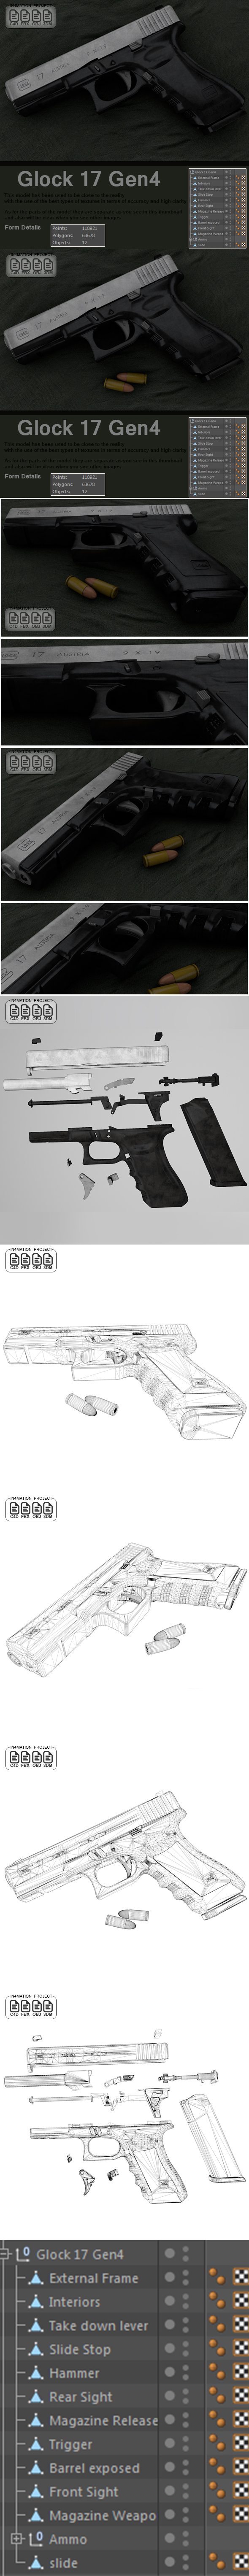 Glock 17 Gen - 3Docean 21481101